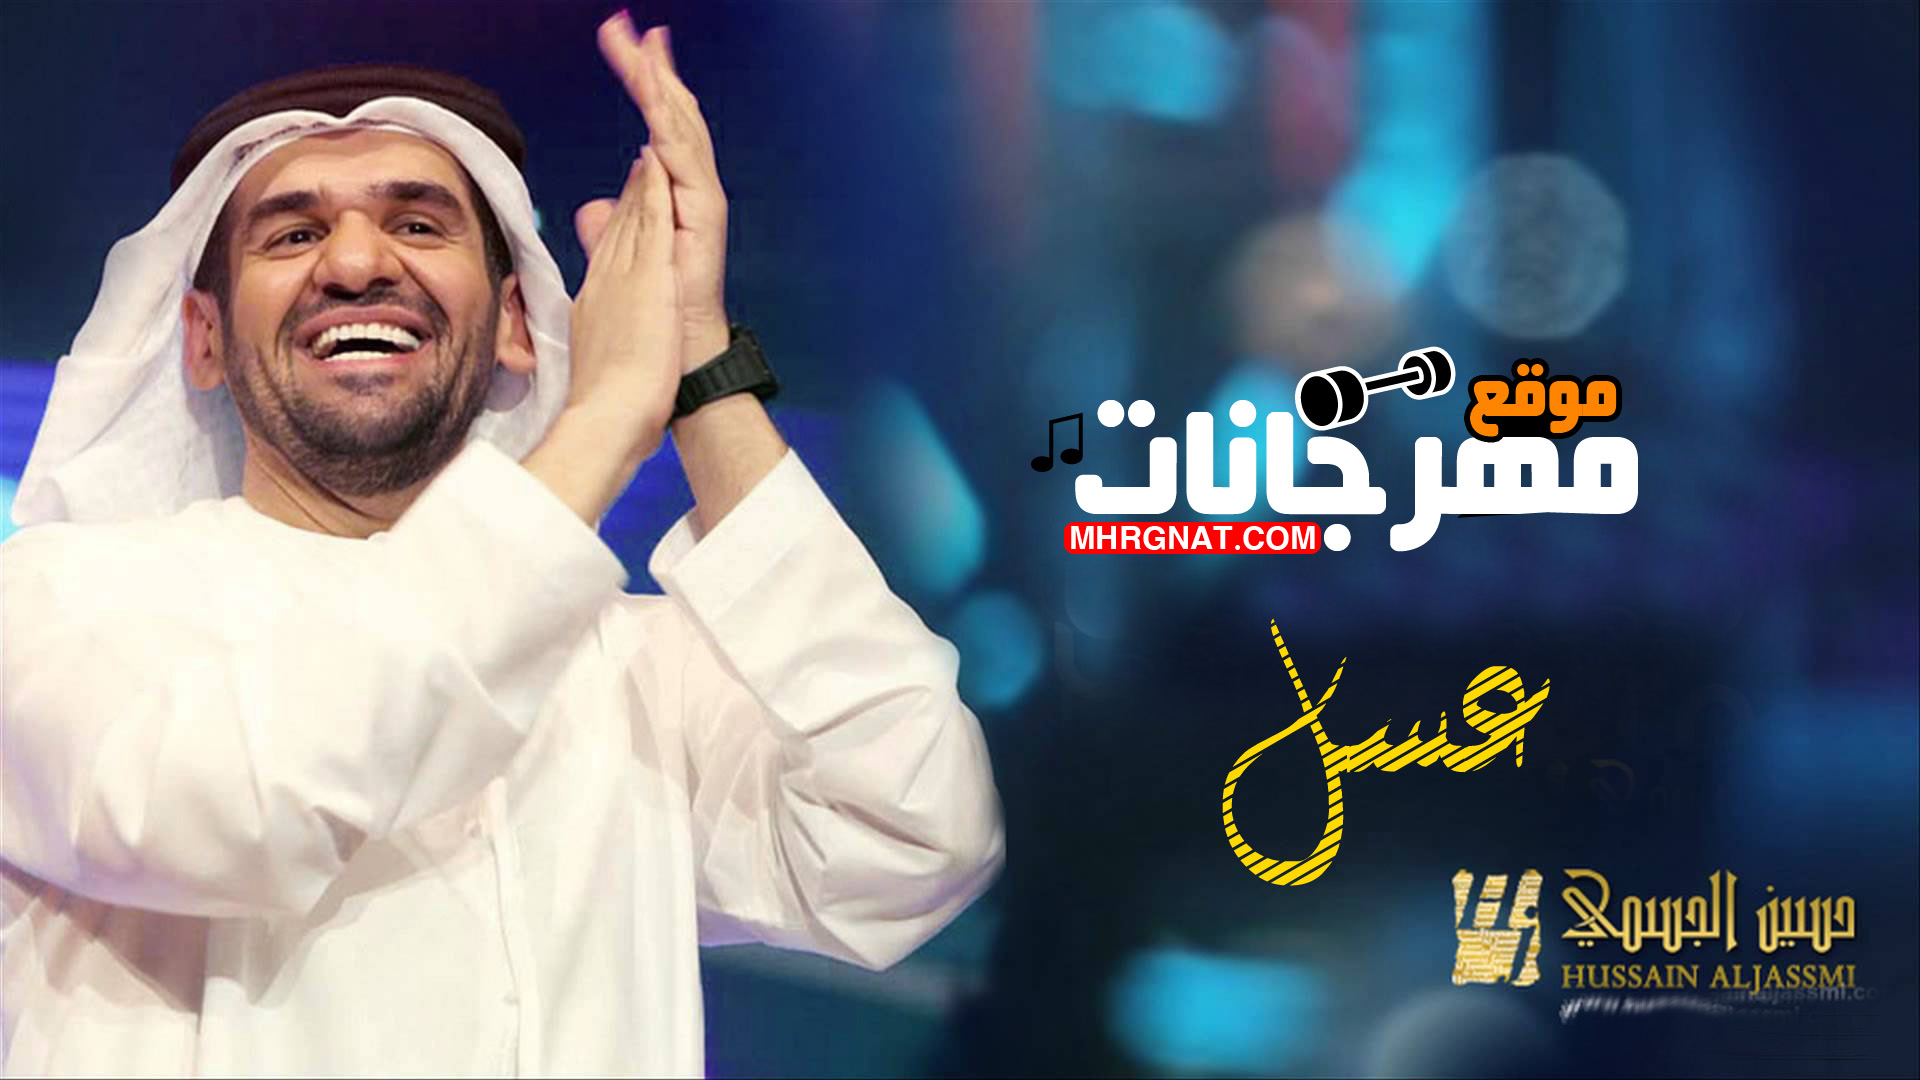 أغنية حسين الجسمي عسل كاملة 2018